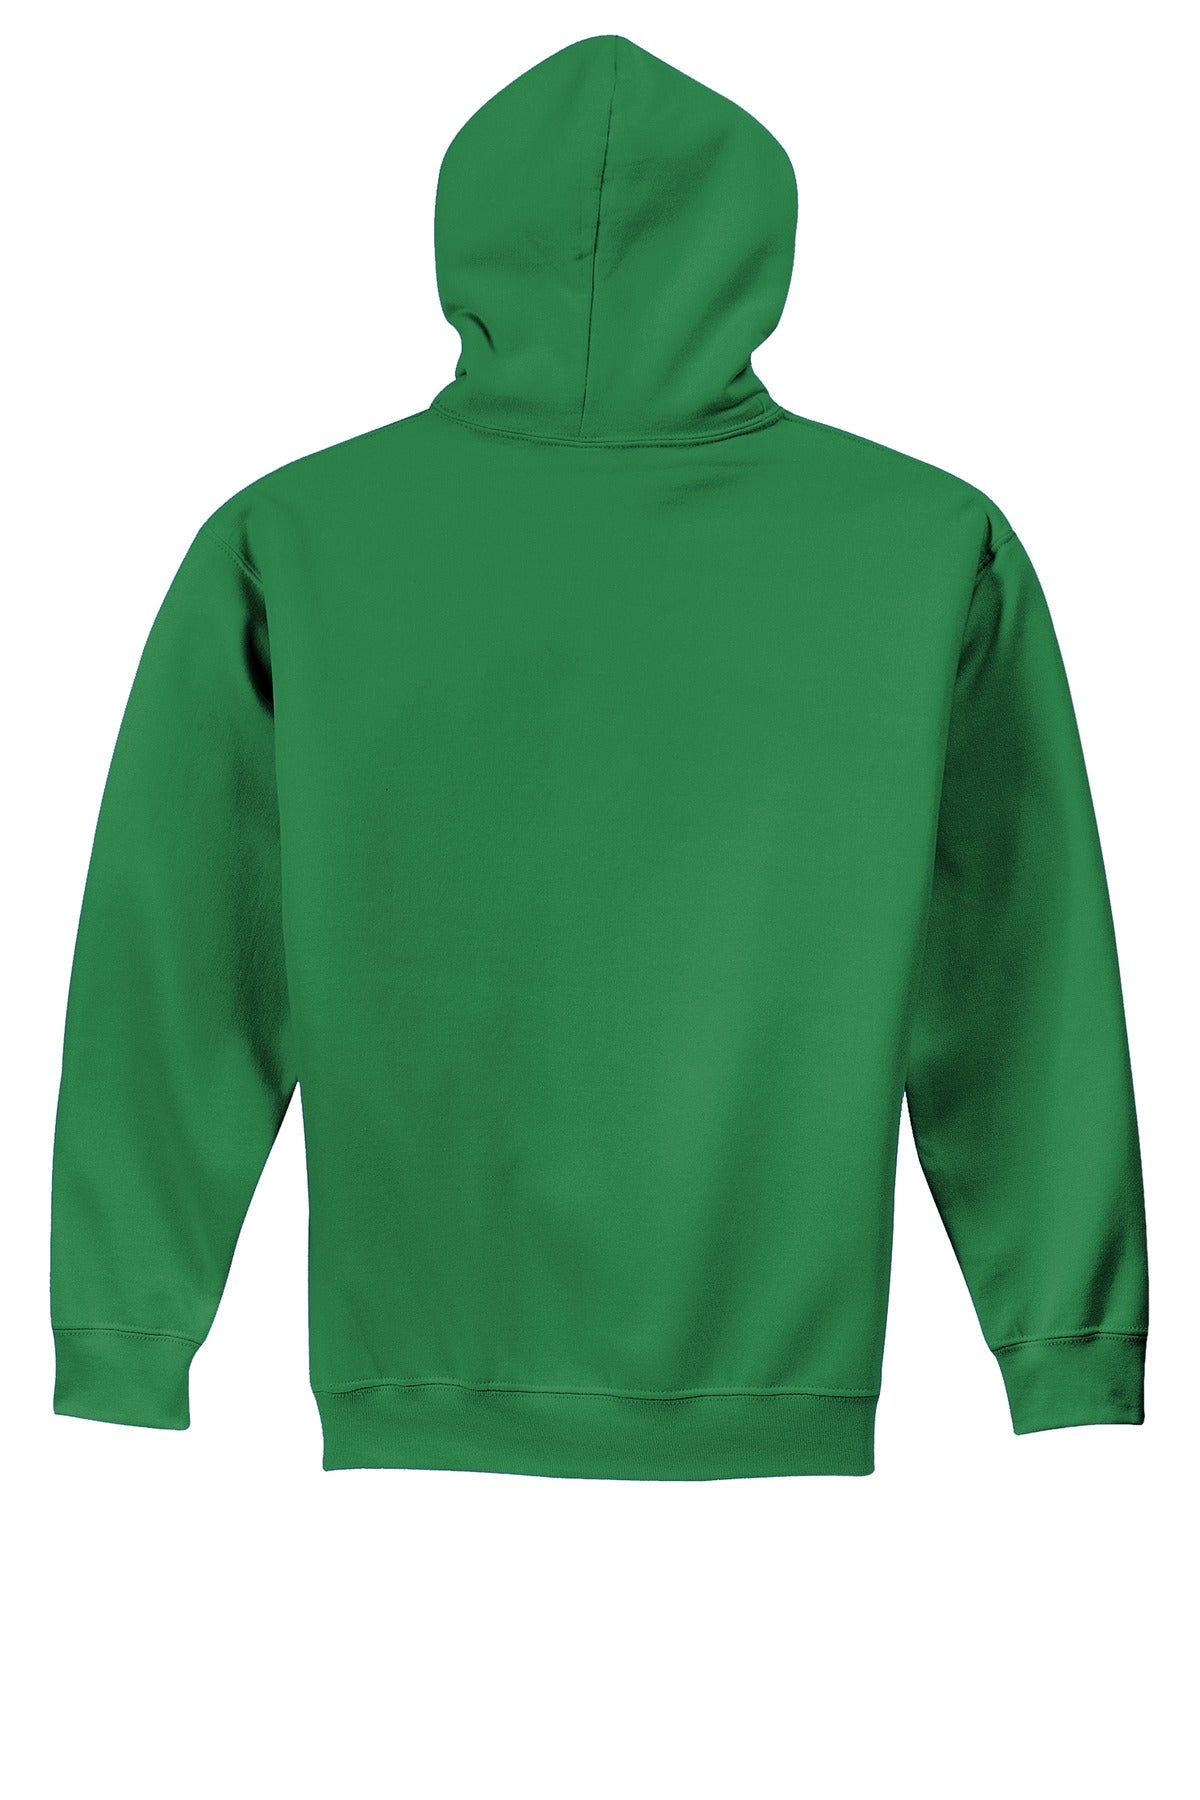 Gildan® - Youth Heavy Blend™ Hooded Sweatshirt. 18500B [Irish Green] - DFW Impression